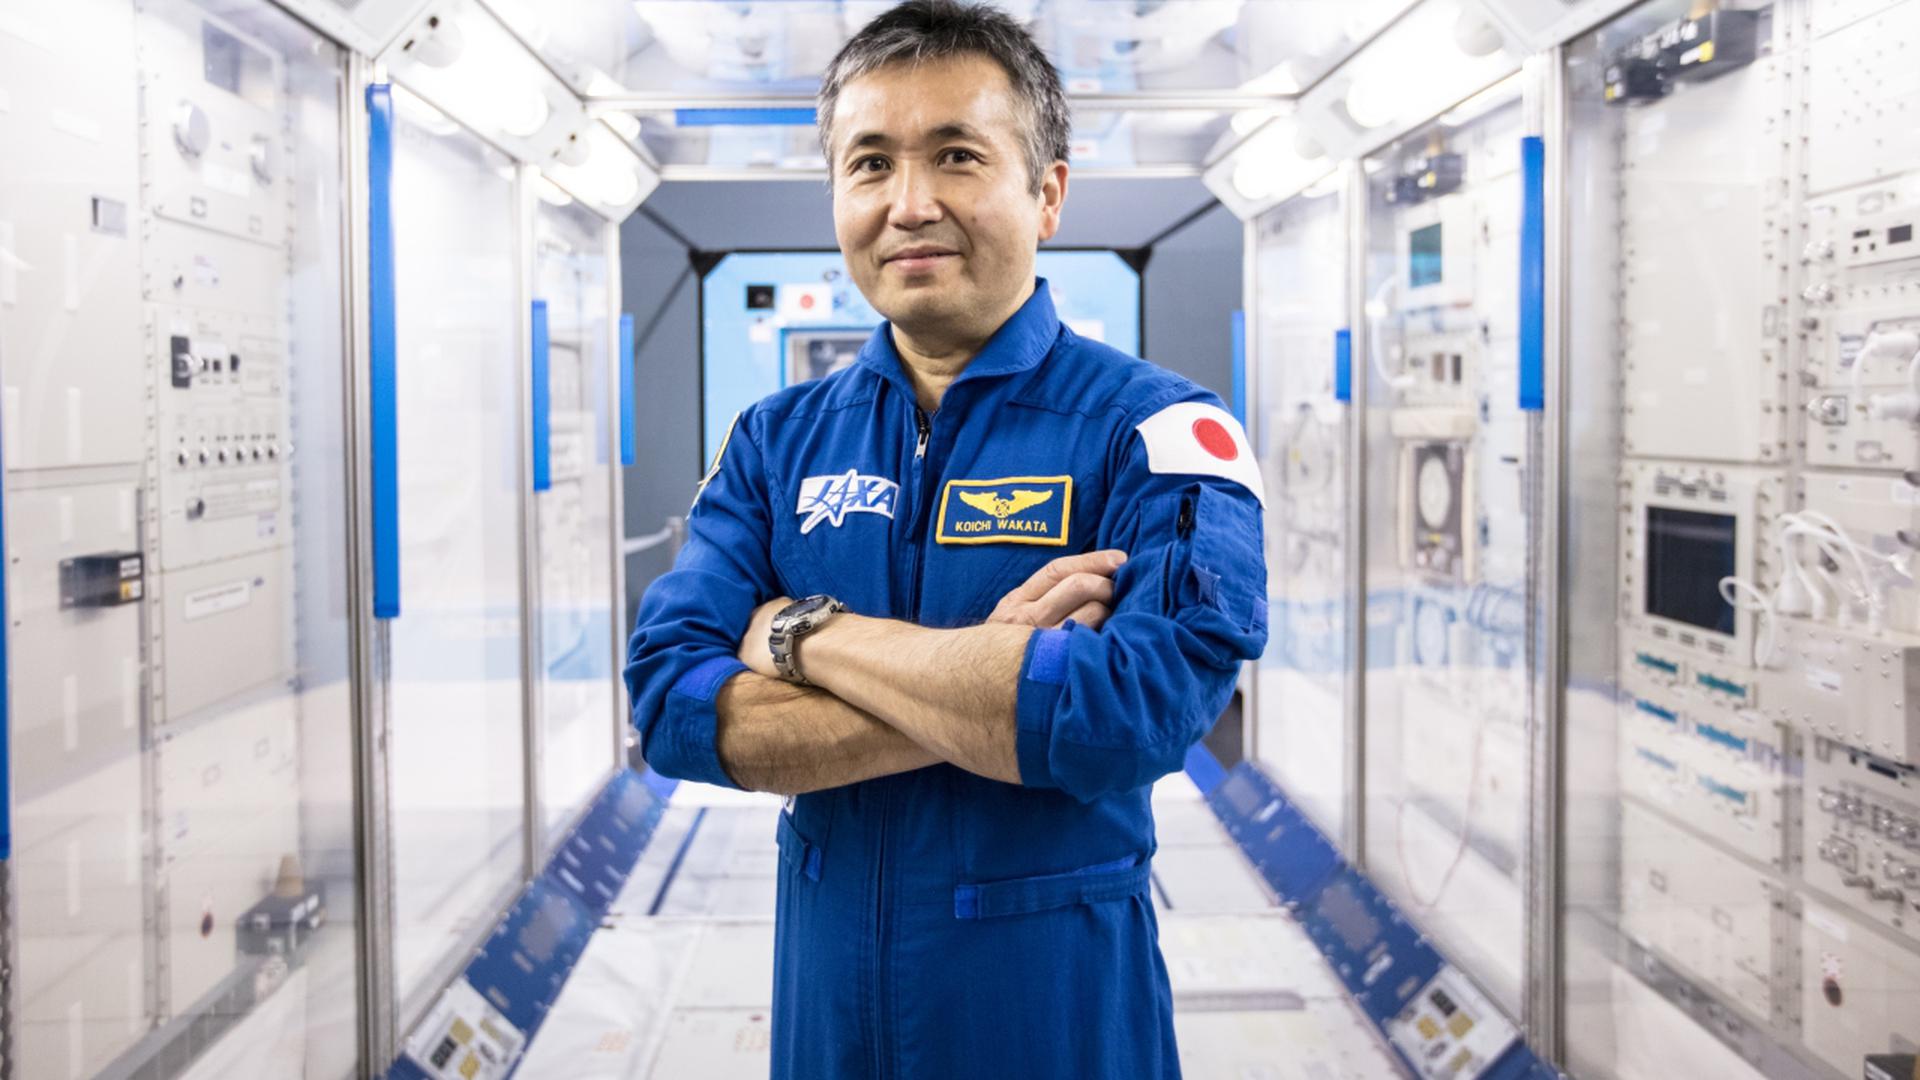 L'astronaute Wakata Koichi a guidé ses hôtes à travers le Centre spatial.